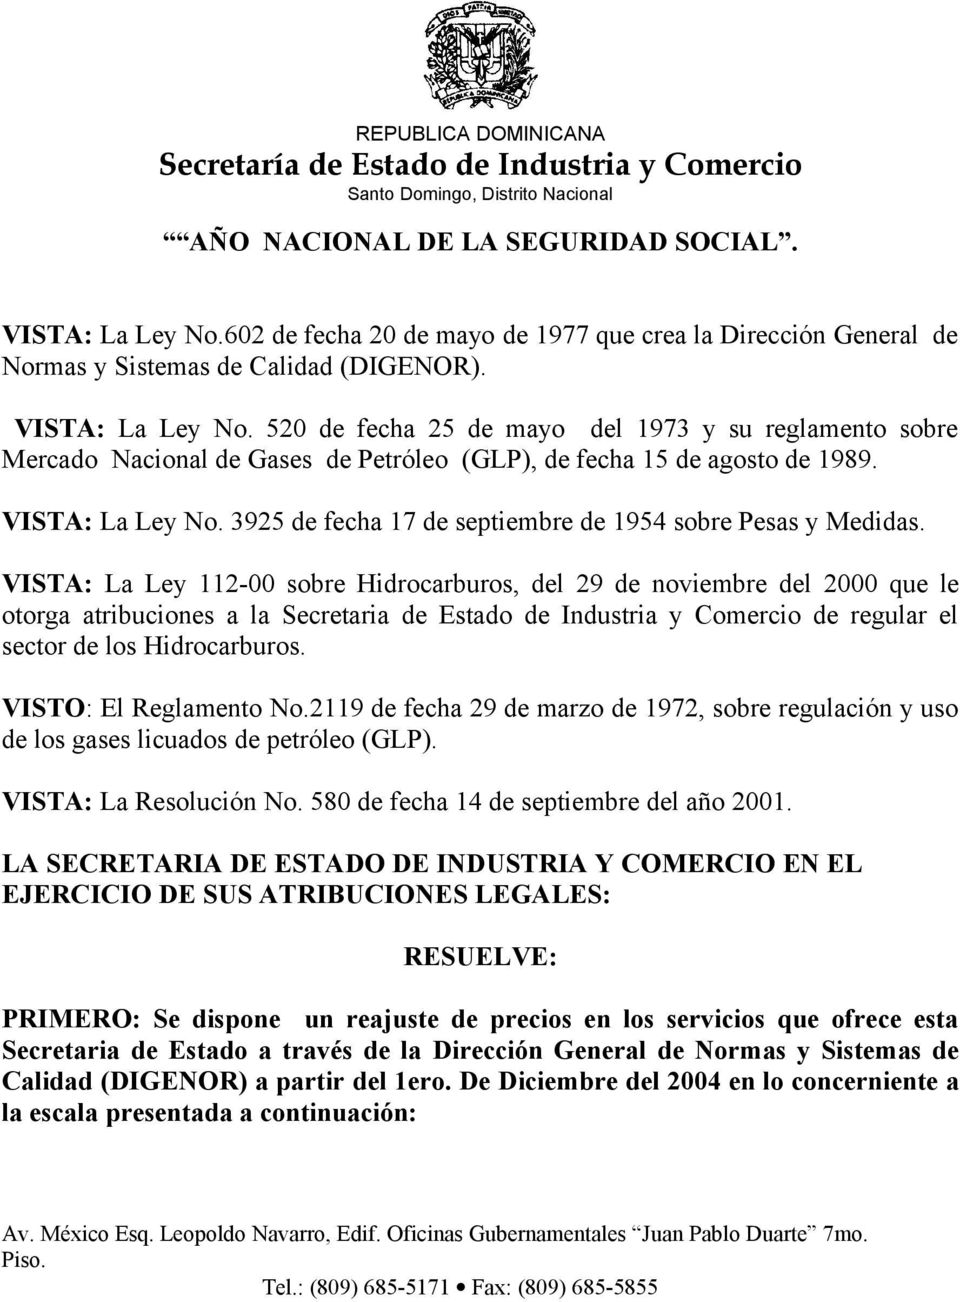 VISTA: La Ley 112-00 sobre Hidrocarburos, del 29 de noviembre del 2000 que le otorga atribuciones a la Secretaria de Estado de Industria y Comercio de regular el sector de los Hidrocarburos.